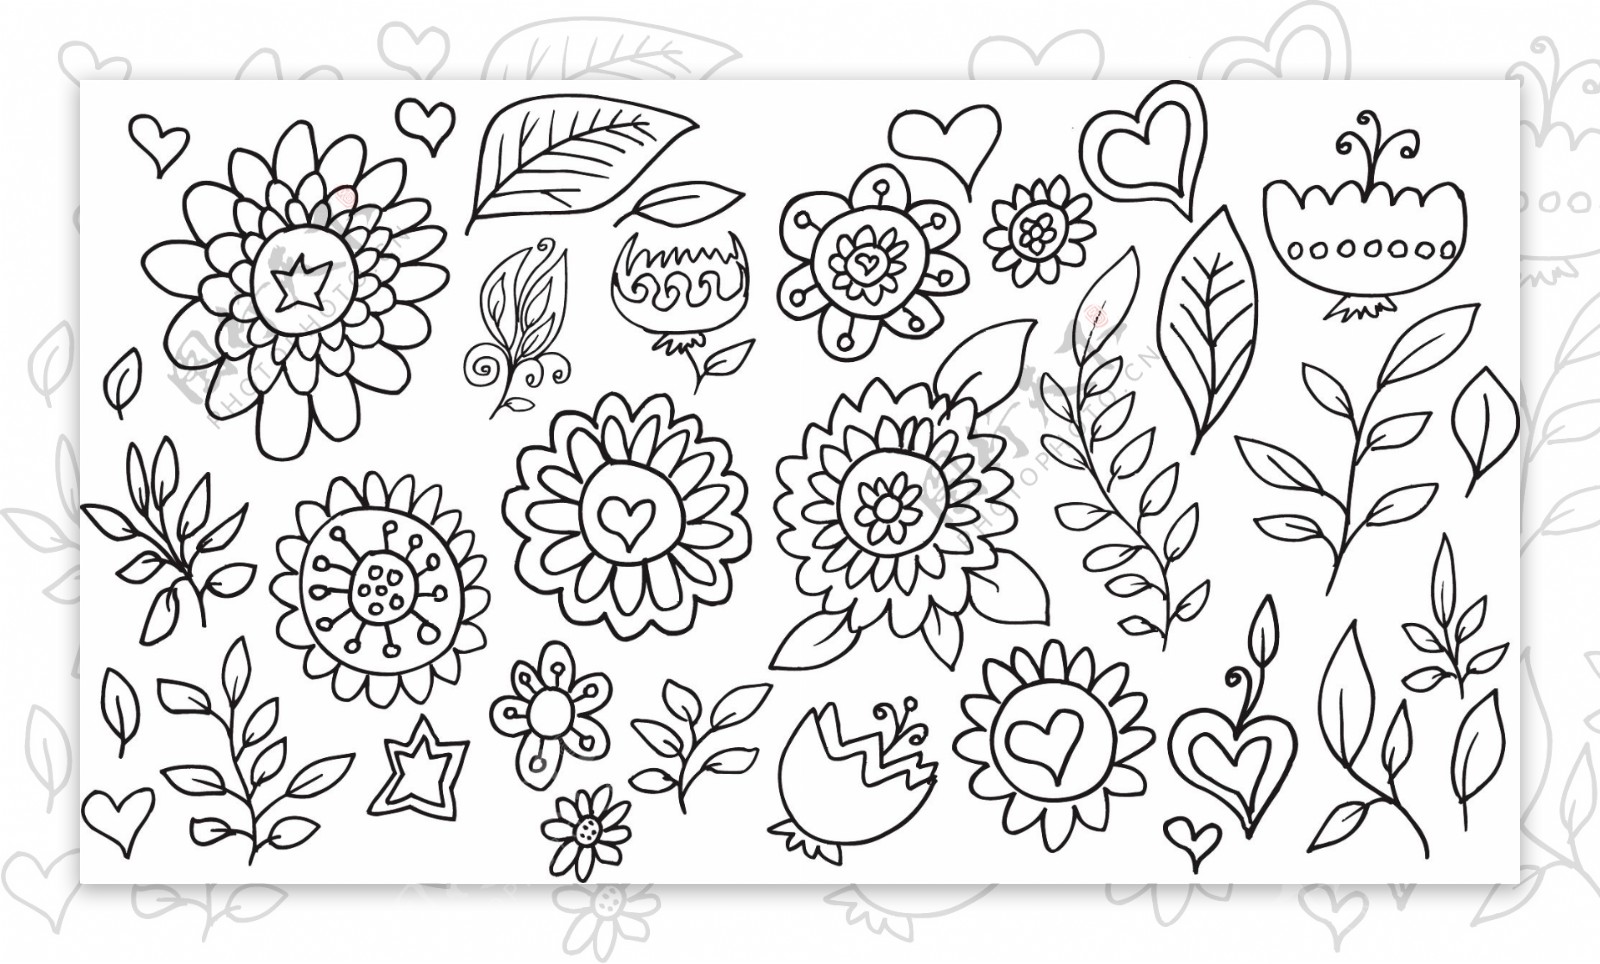 黑白线条花朵树叶桂冠矢量插画